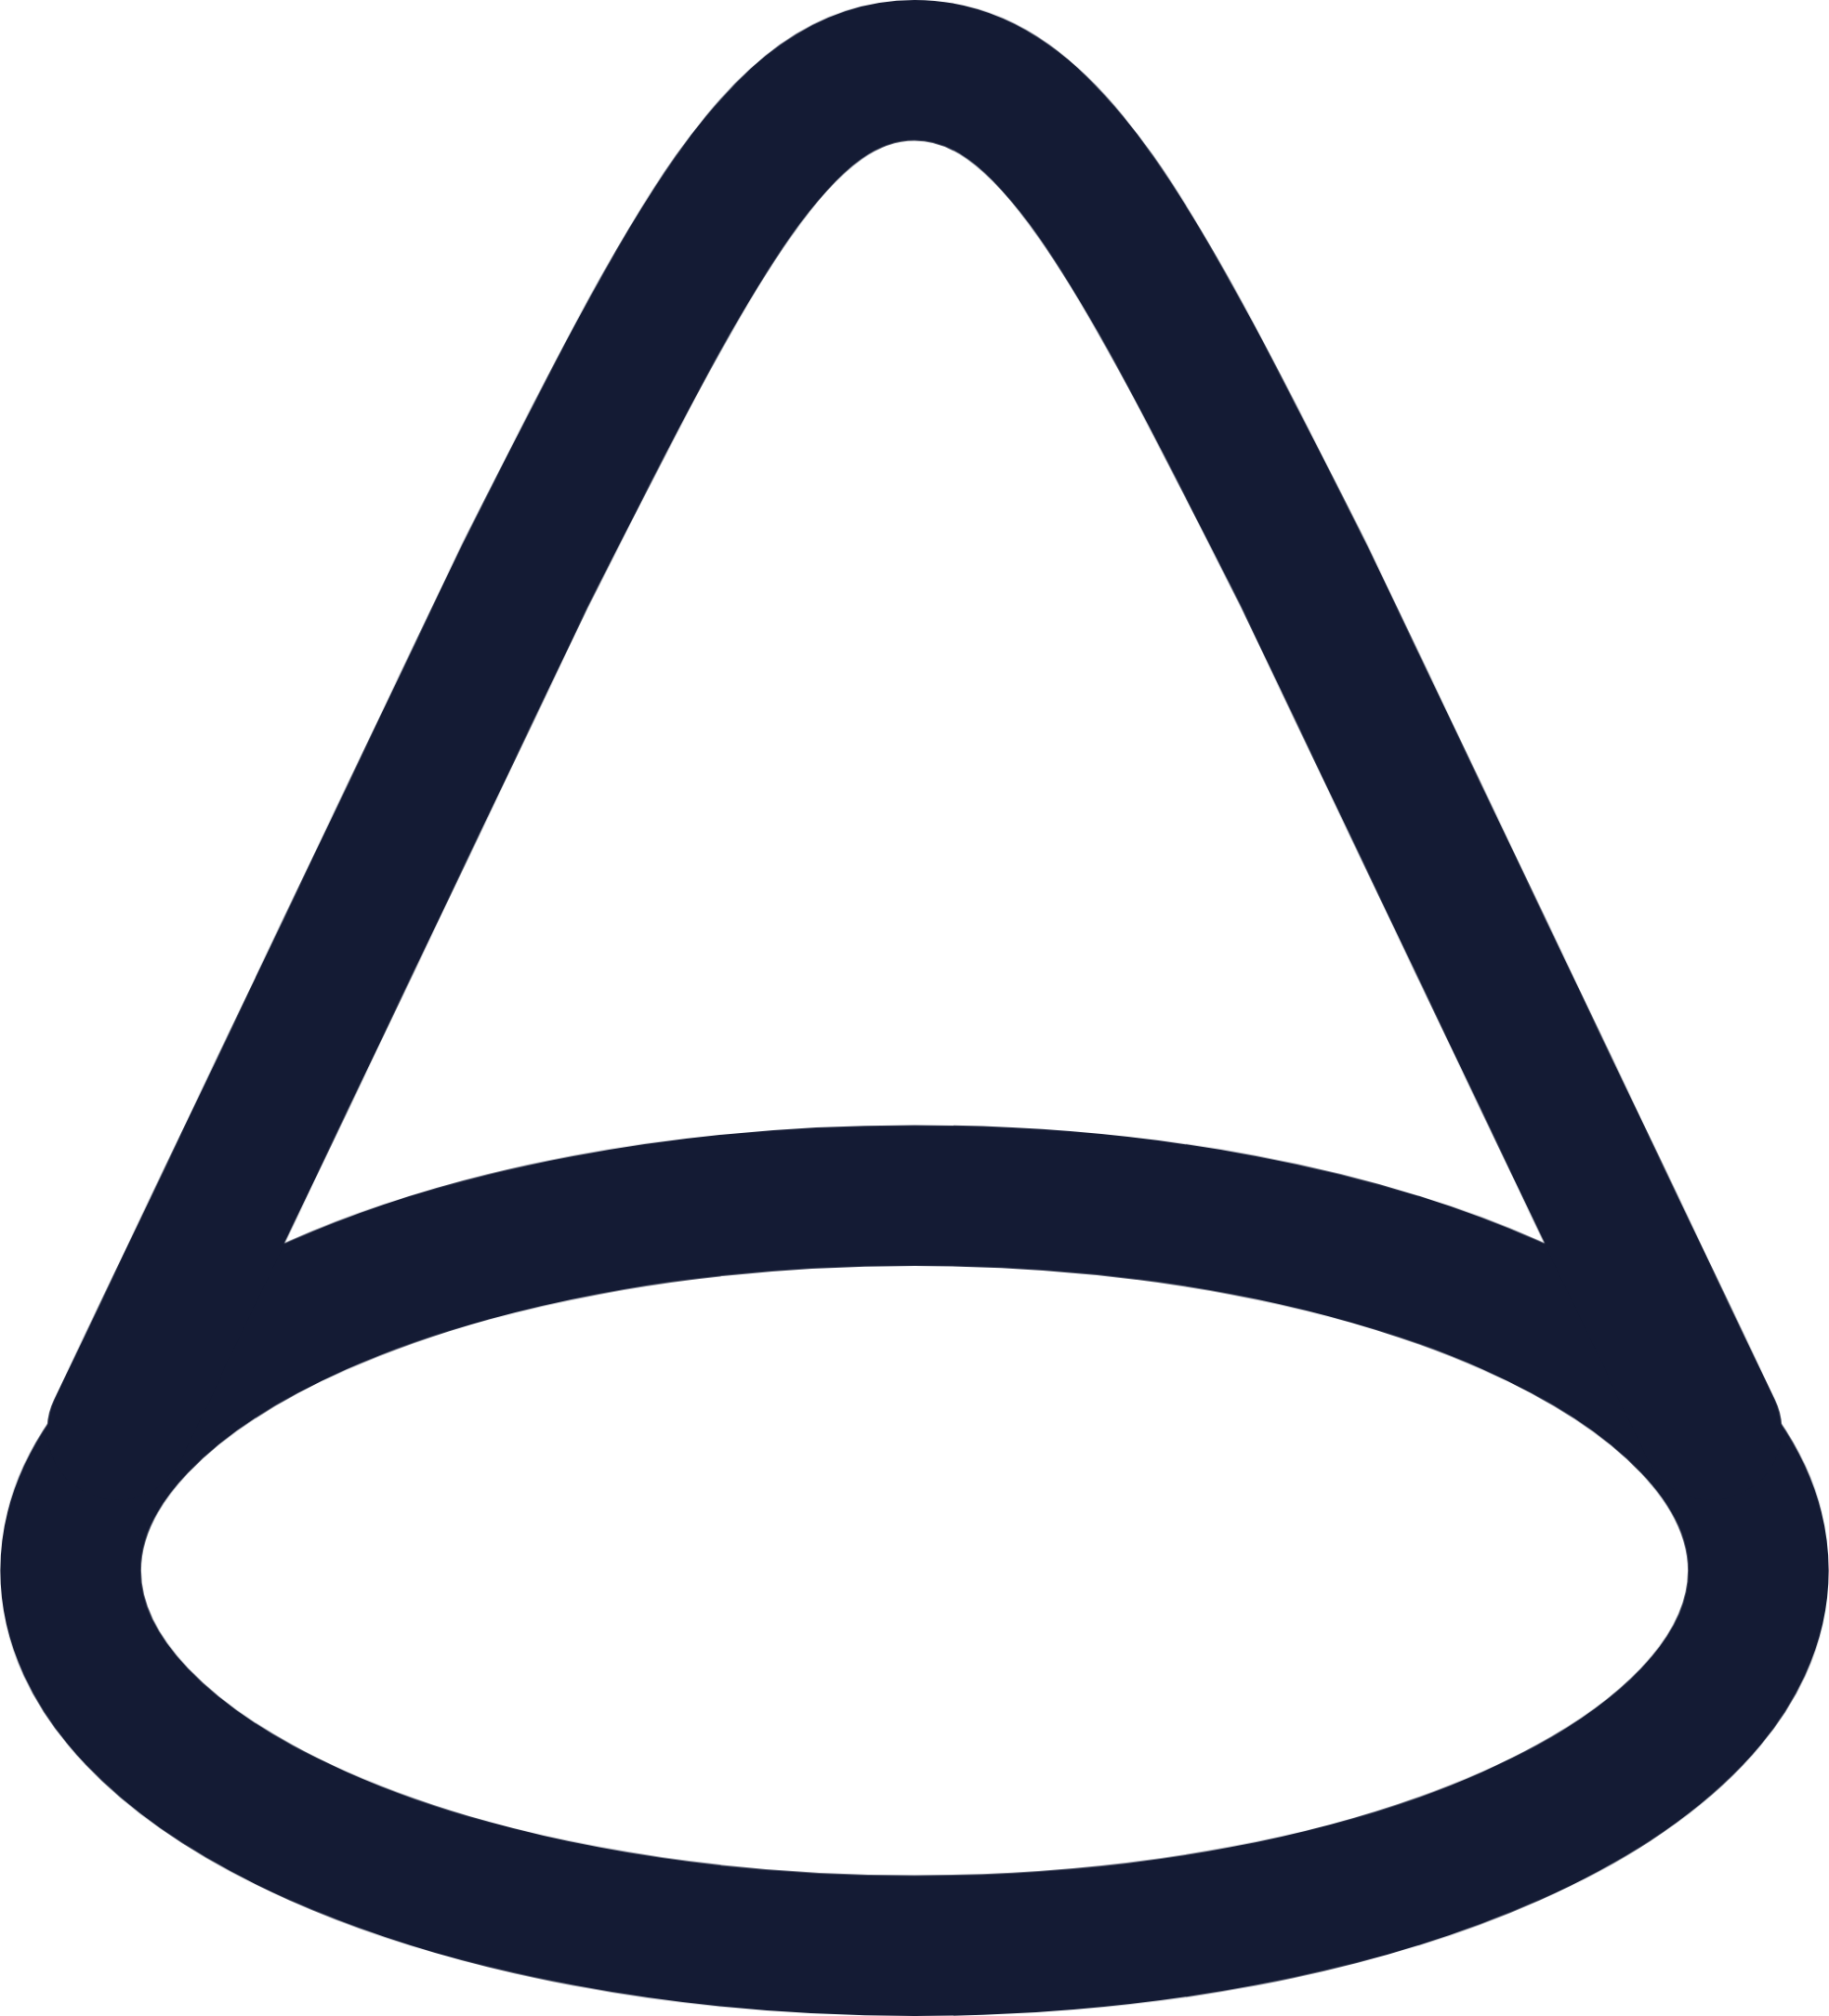 cone icon